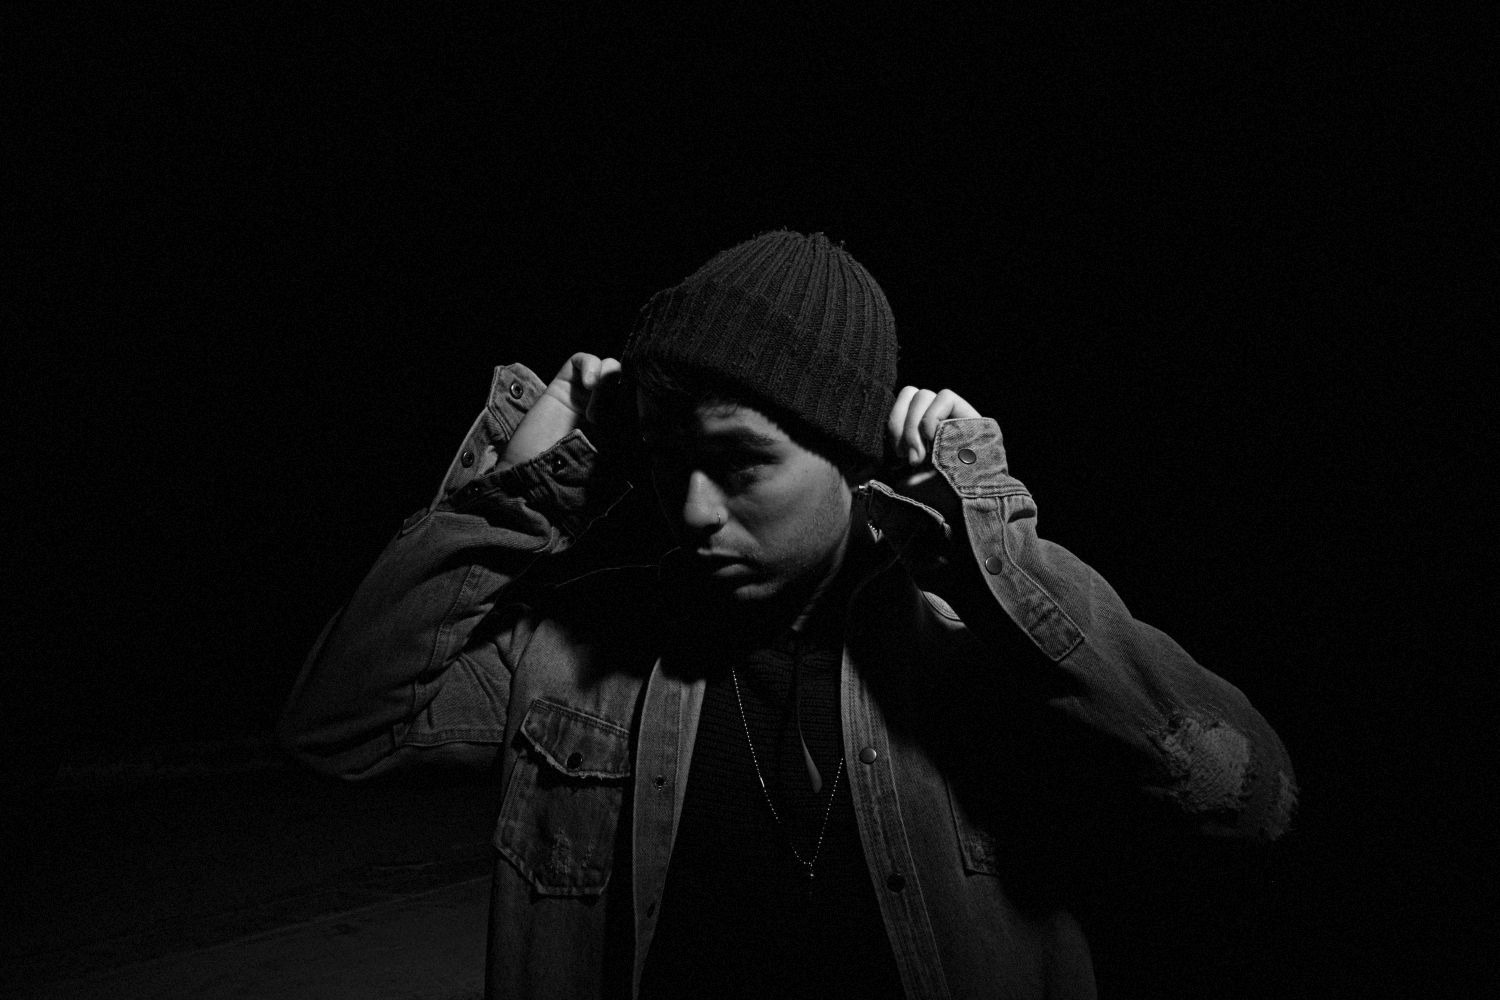 “Solitario”, fuori il terzo estratto dall’album d’esordio del rapper Pushmmua